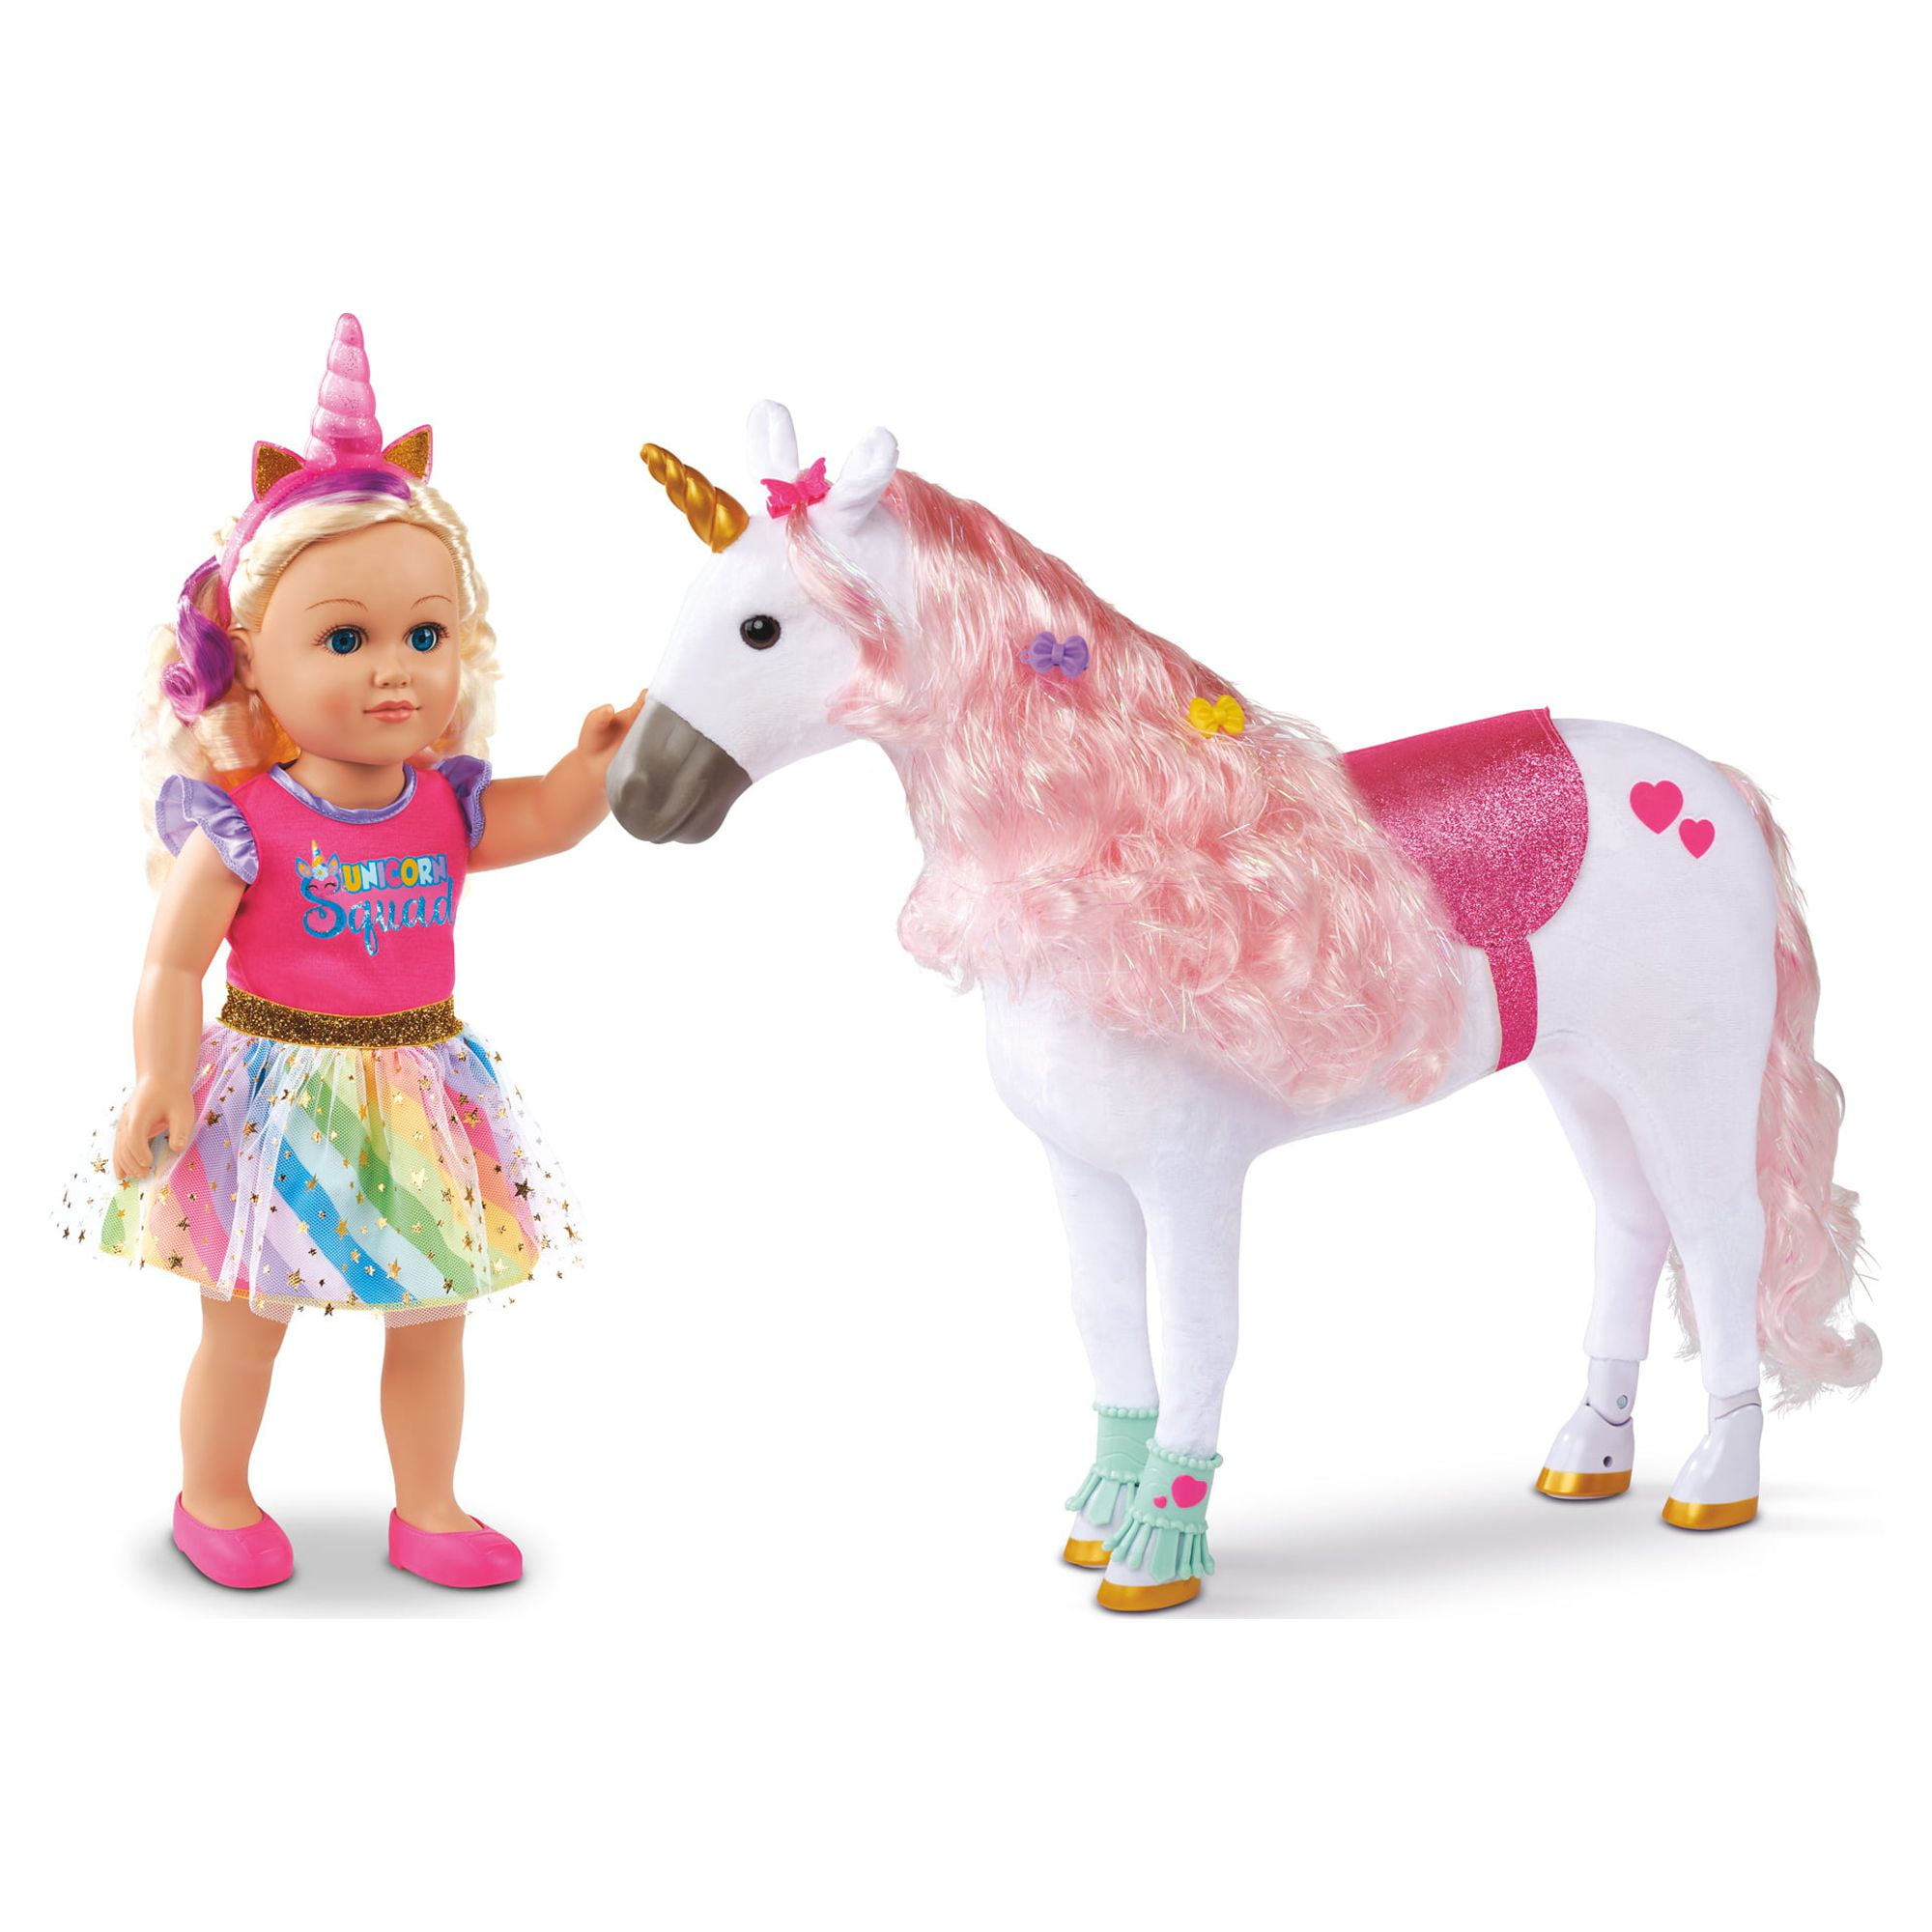 Mr. Wonderful Bottle unicorn - You are fantastic, WOA11111EM » Chollometro